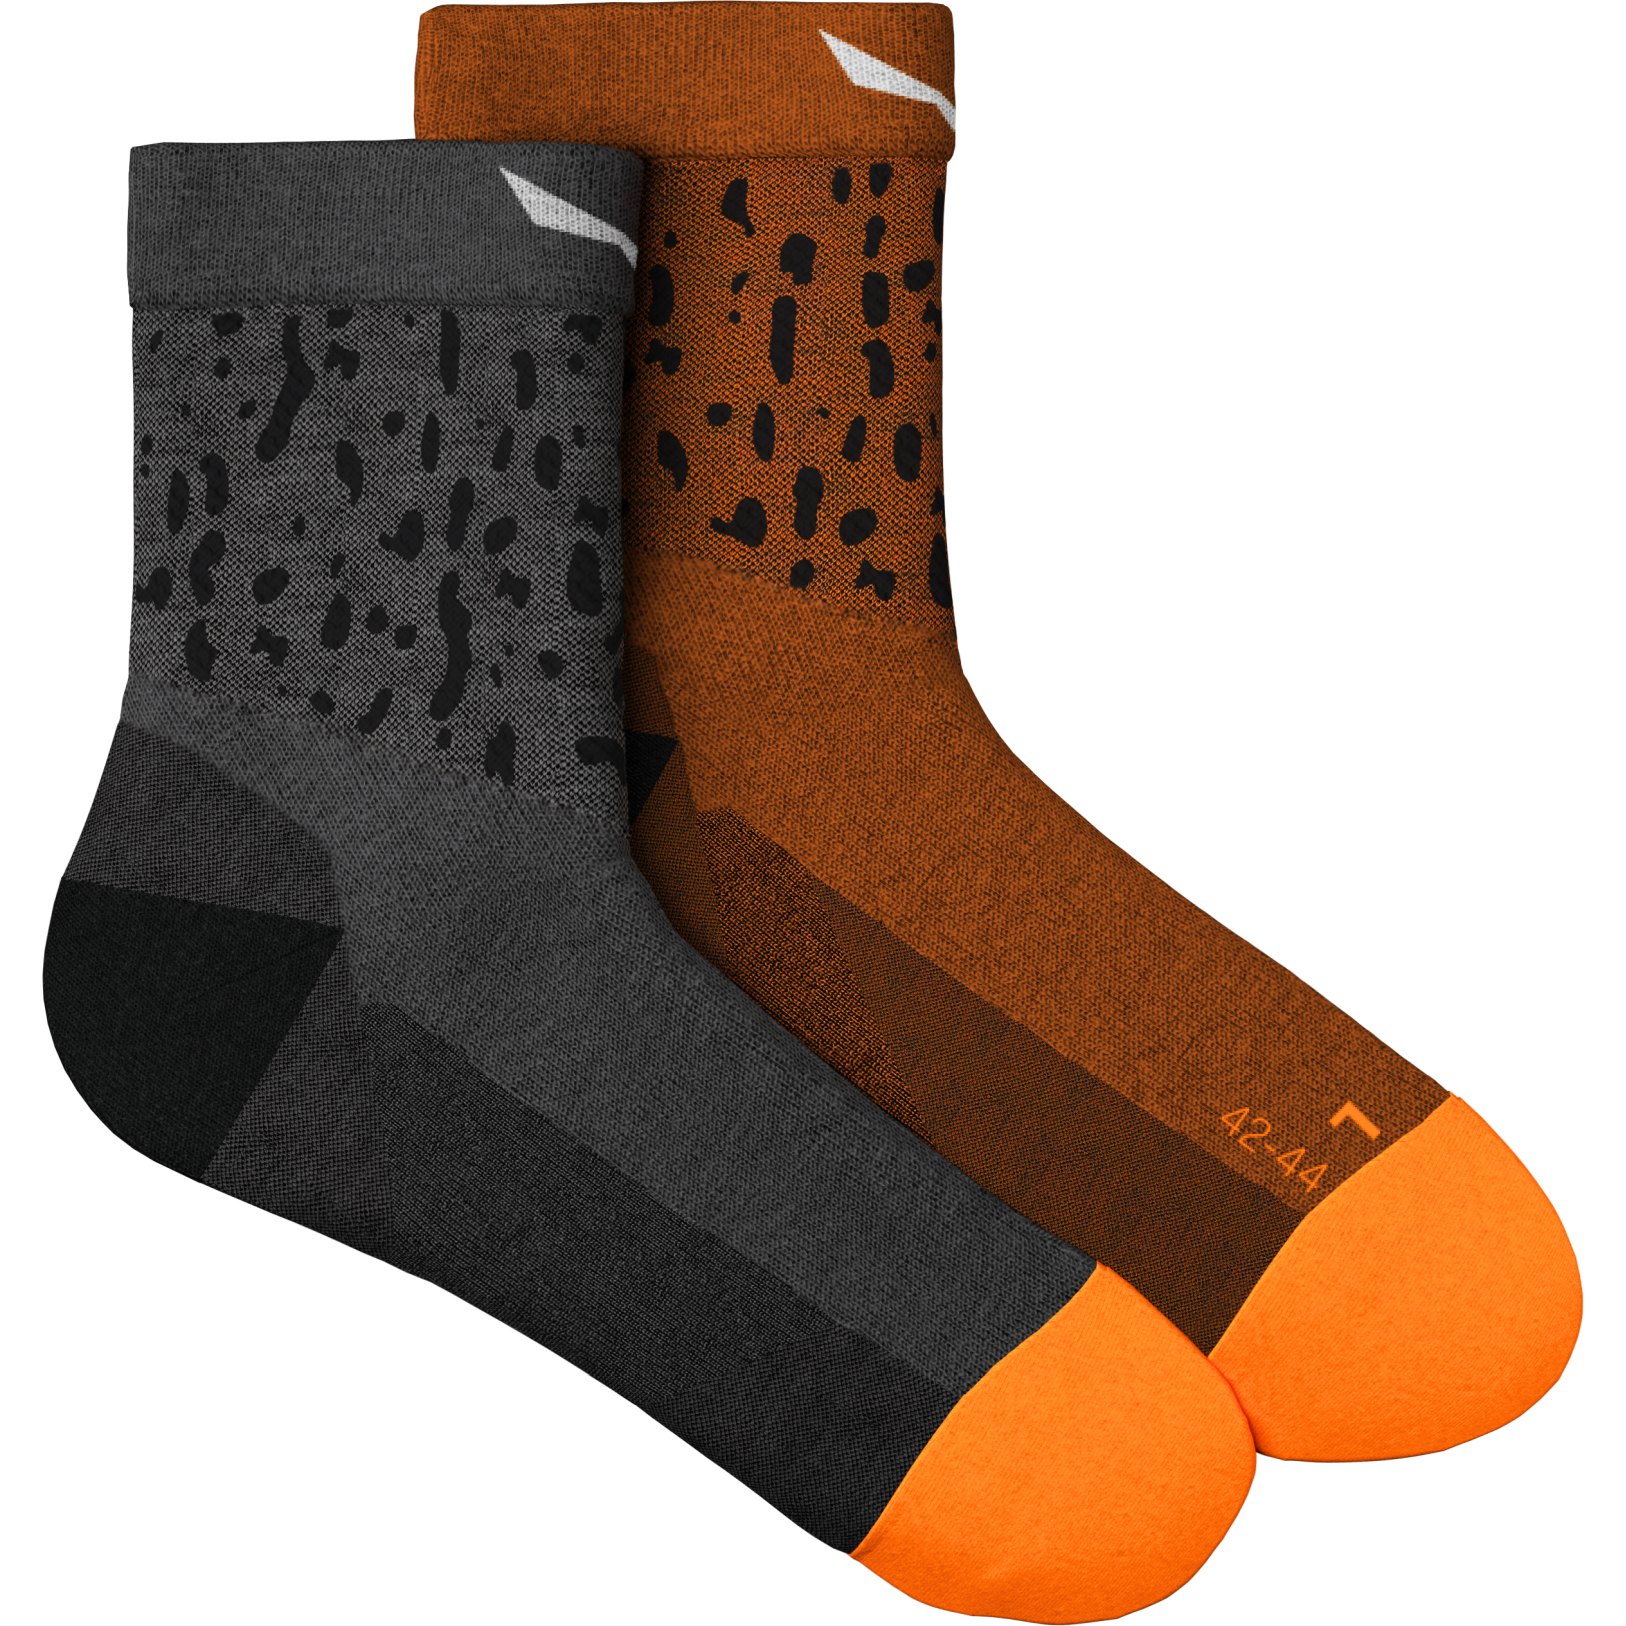 Produktbild von Salewa Mountain Trainer Salamander Alpine Merino Quarter Socken - medium grey melange 621